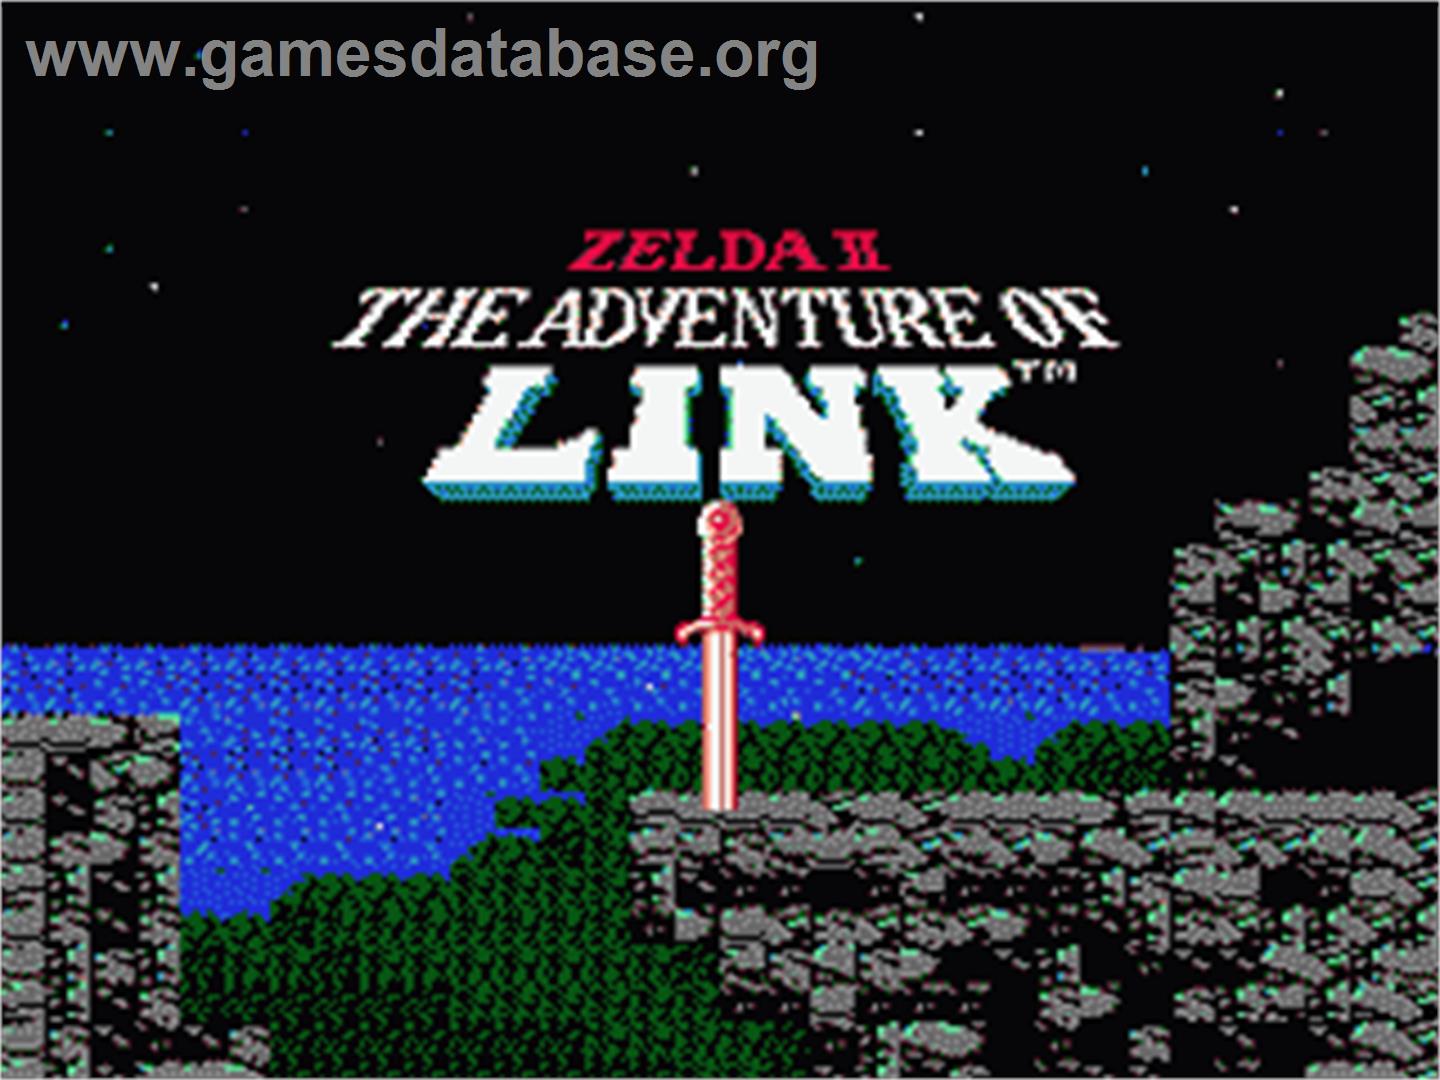 Zelda II: The Adventure of Link - Nintendo NES - Artwork - Title Screen